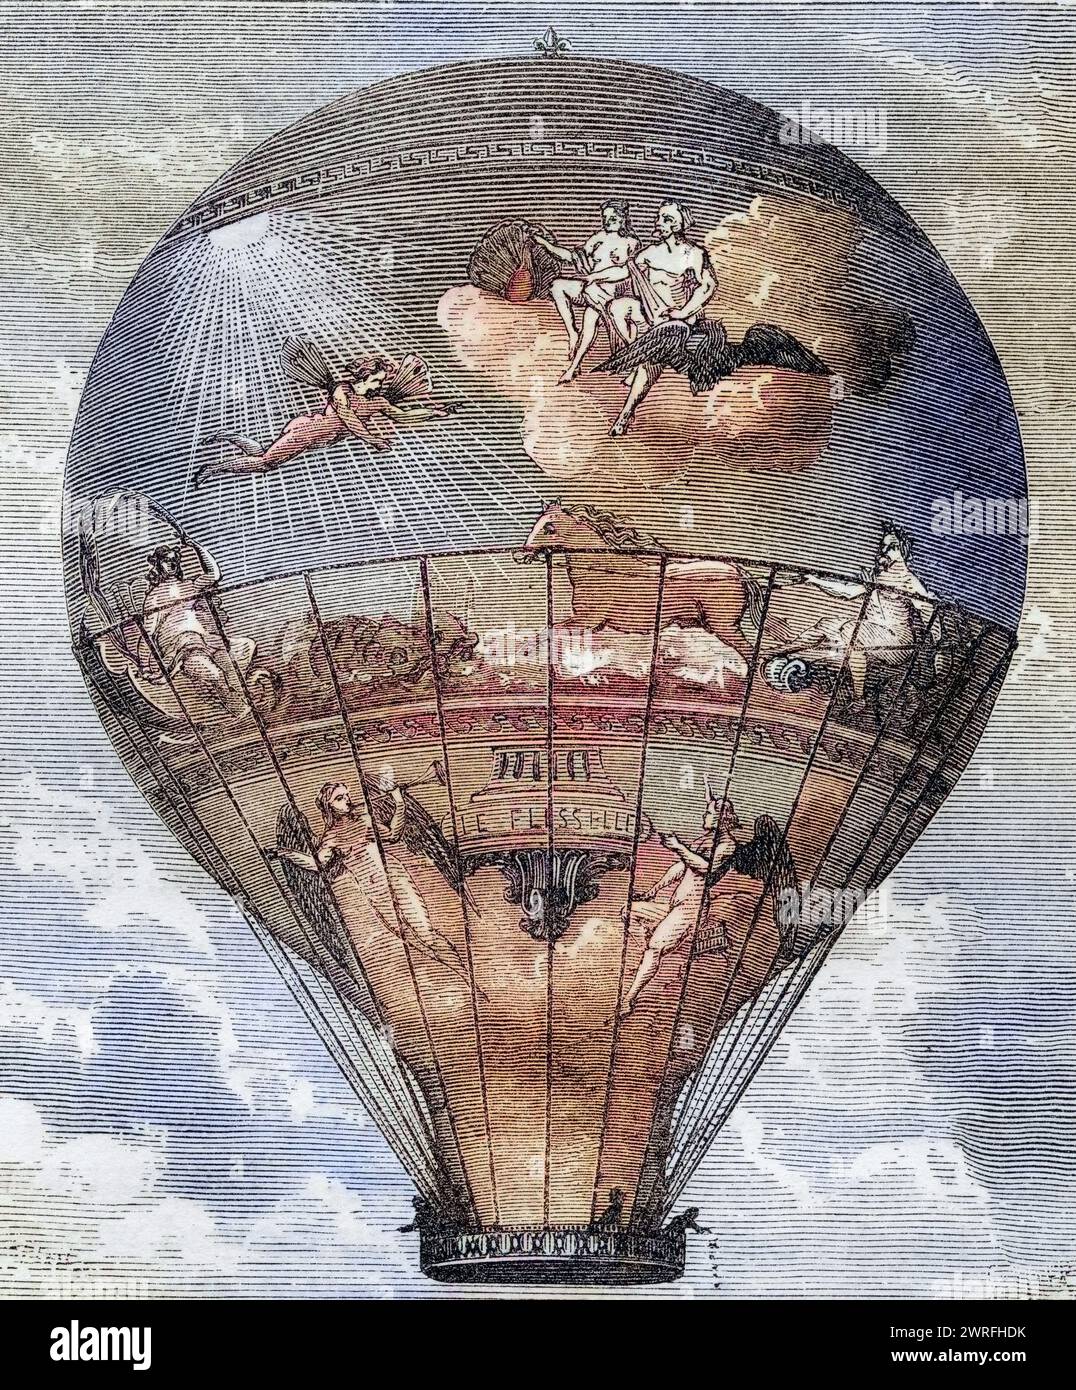 Le Flesselle Ballon der Gebrüder Montgolfier 1784 / Le Flesselle Ballon hergestellt von den Montgolfier Brothers 1784 aus dem Buch Wonderful Balloon Ascents or the Conquest of the Sky, erschienen um 1870, Historisch, digital restaurierte Reproduktion von einer Vorlage aus dem 19. Jahrhundert, Datum nicht angegeben, Stockfoto